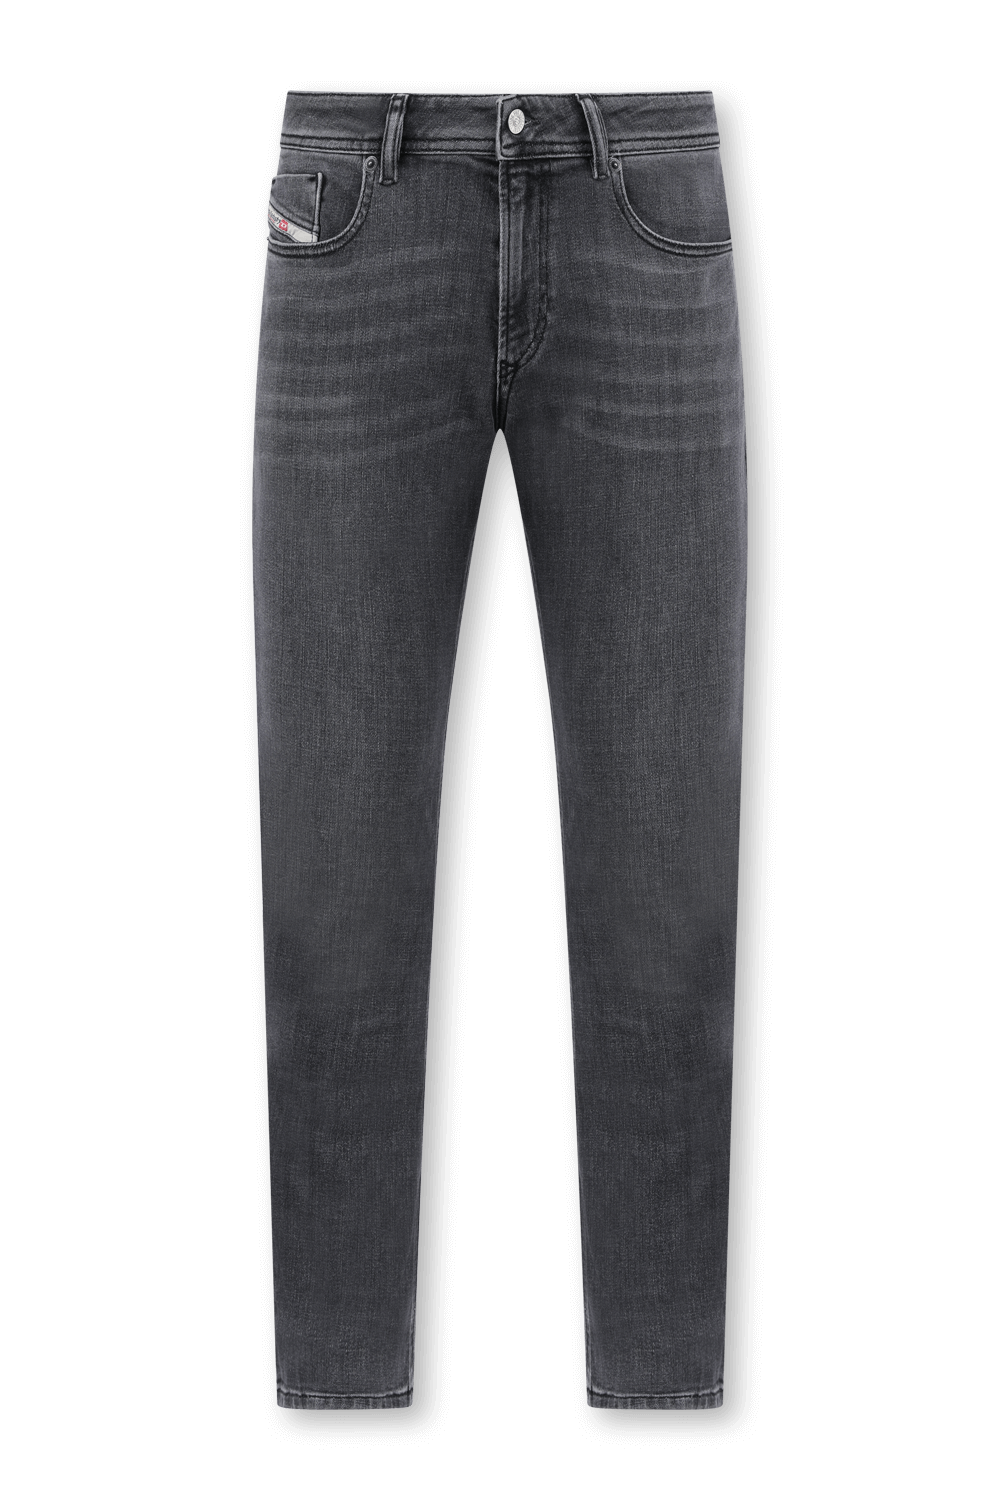 ג'ינס סקיני שחור מדגם סליקר DIESEL